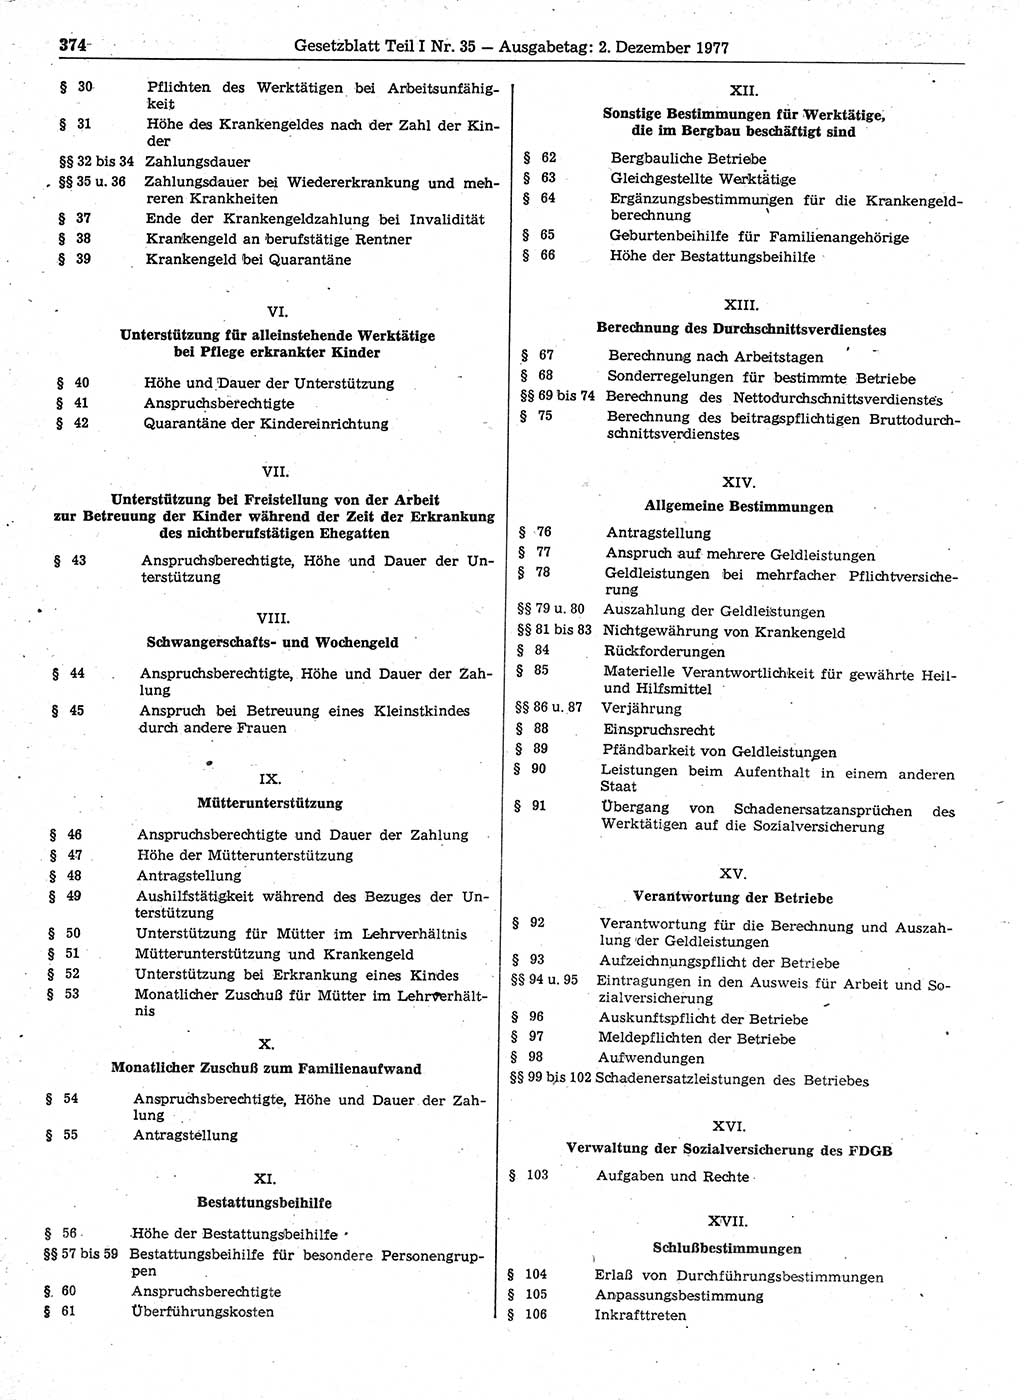 Gesetzblatt (GBl.) der Deutschen Demokratischen Republik (DDR) Teil Ⅰ 1977, Seite 374 (GBl. DDR Ⅰ 1977, S. 374)